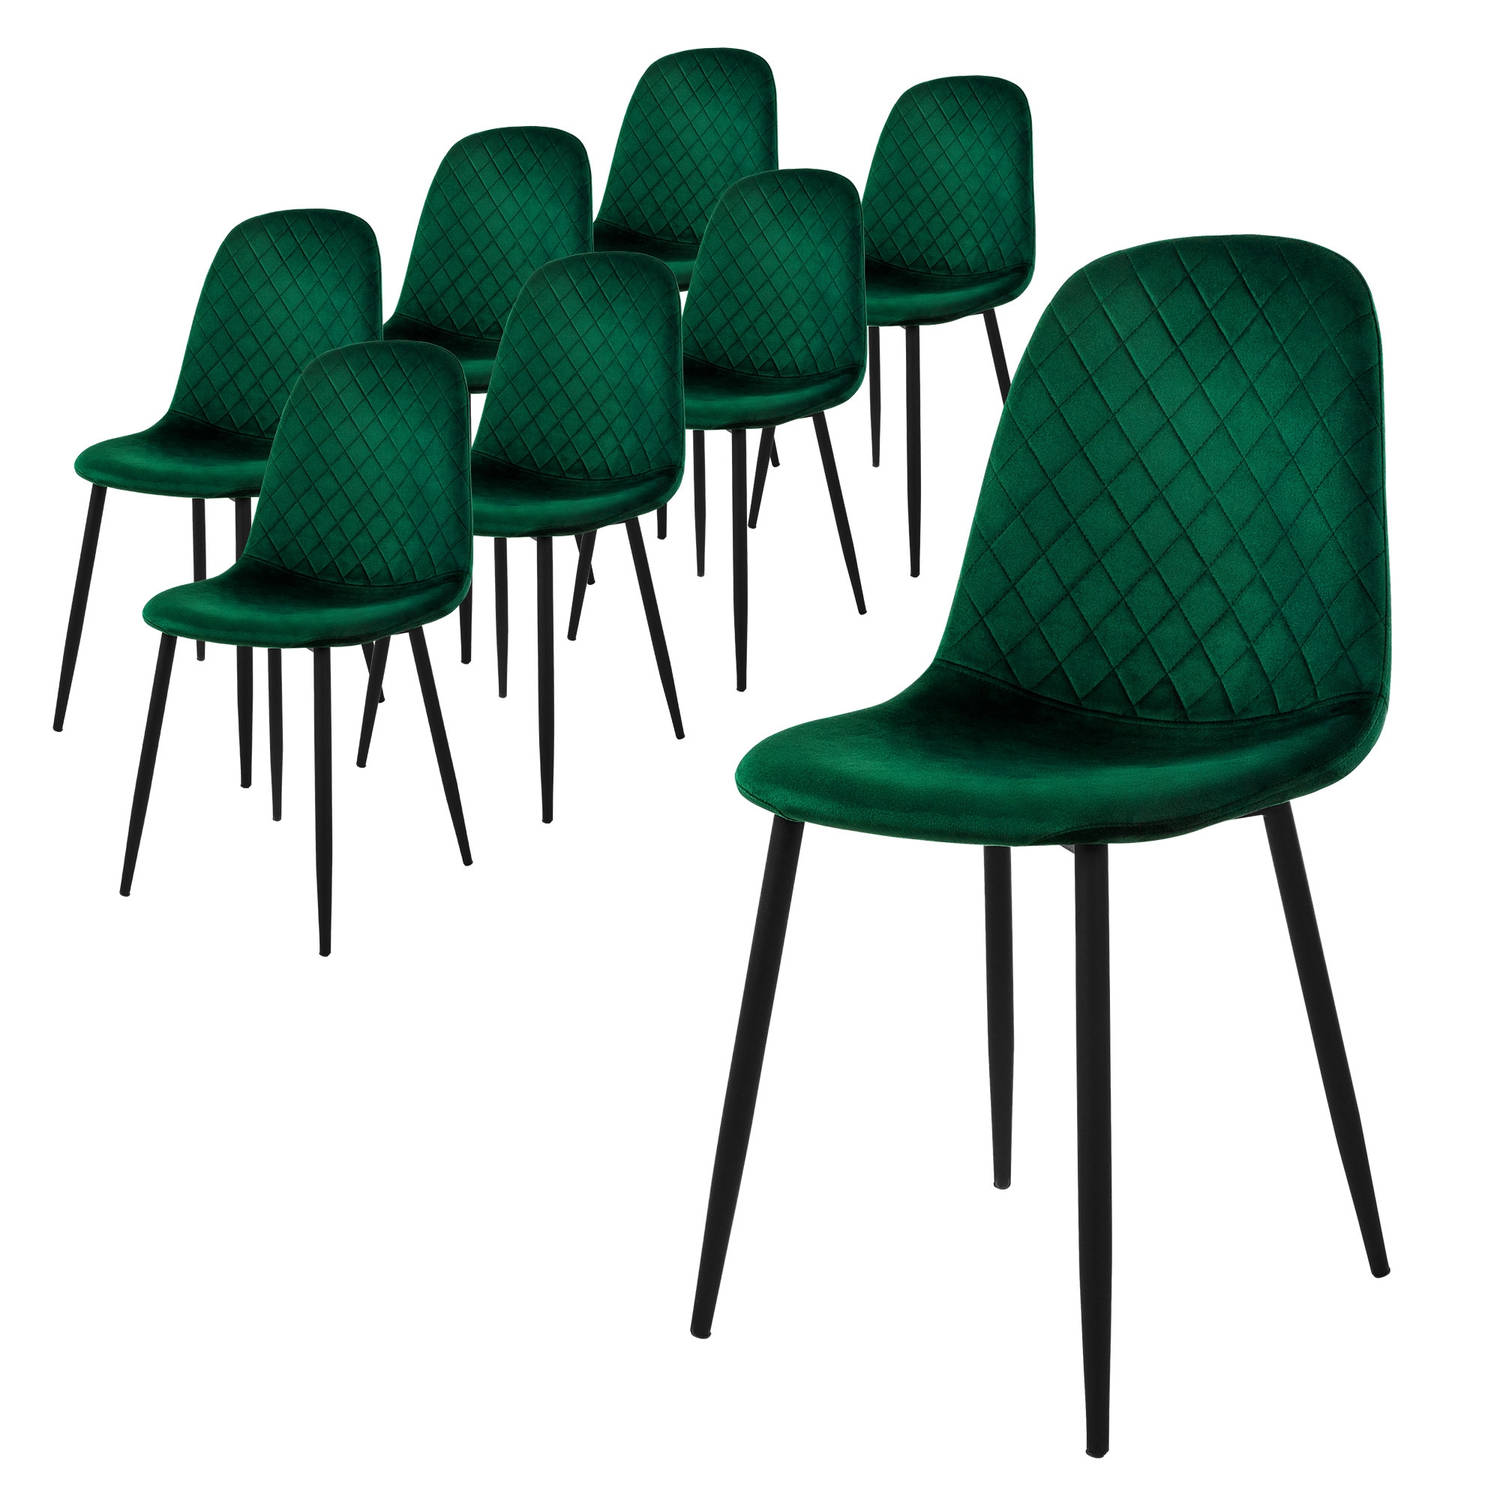 ML-Design eetkamerstoelen set van 8, donkergroen, keukenstoel met fluwelen bekleding,woonkamerstoel met rugleuning,gestoffeerde stoel met metalen poten, ergonomische stoel voor eet